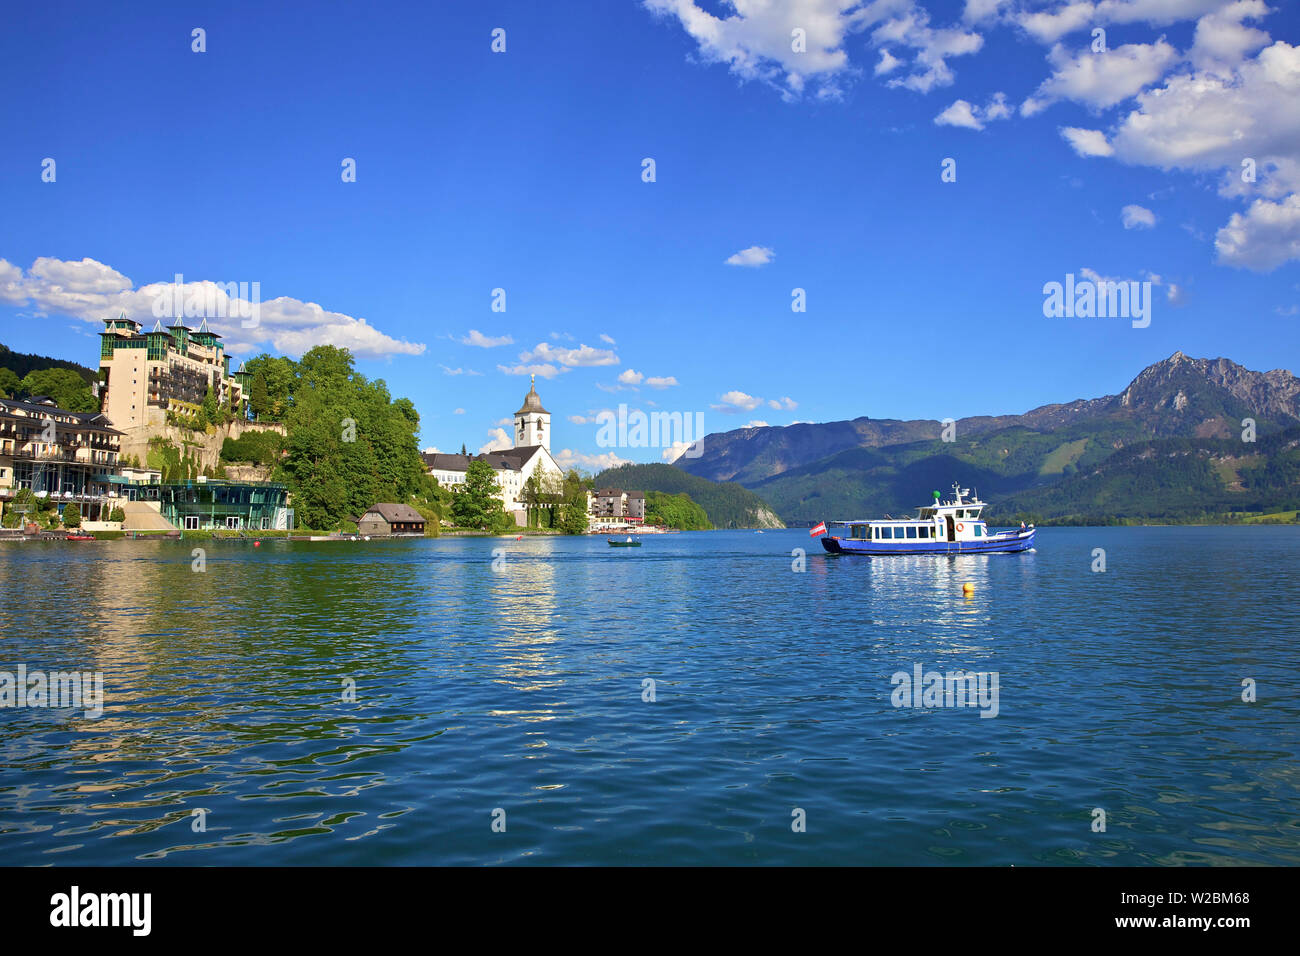 Una barca di traghetto sul lago Wolfgangsee, St. Wolfgang, Austria, Europa Foto Stock